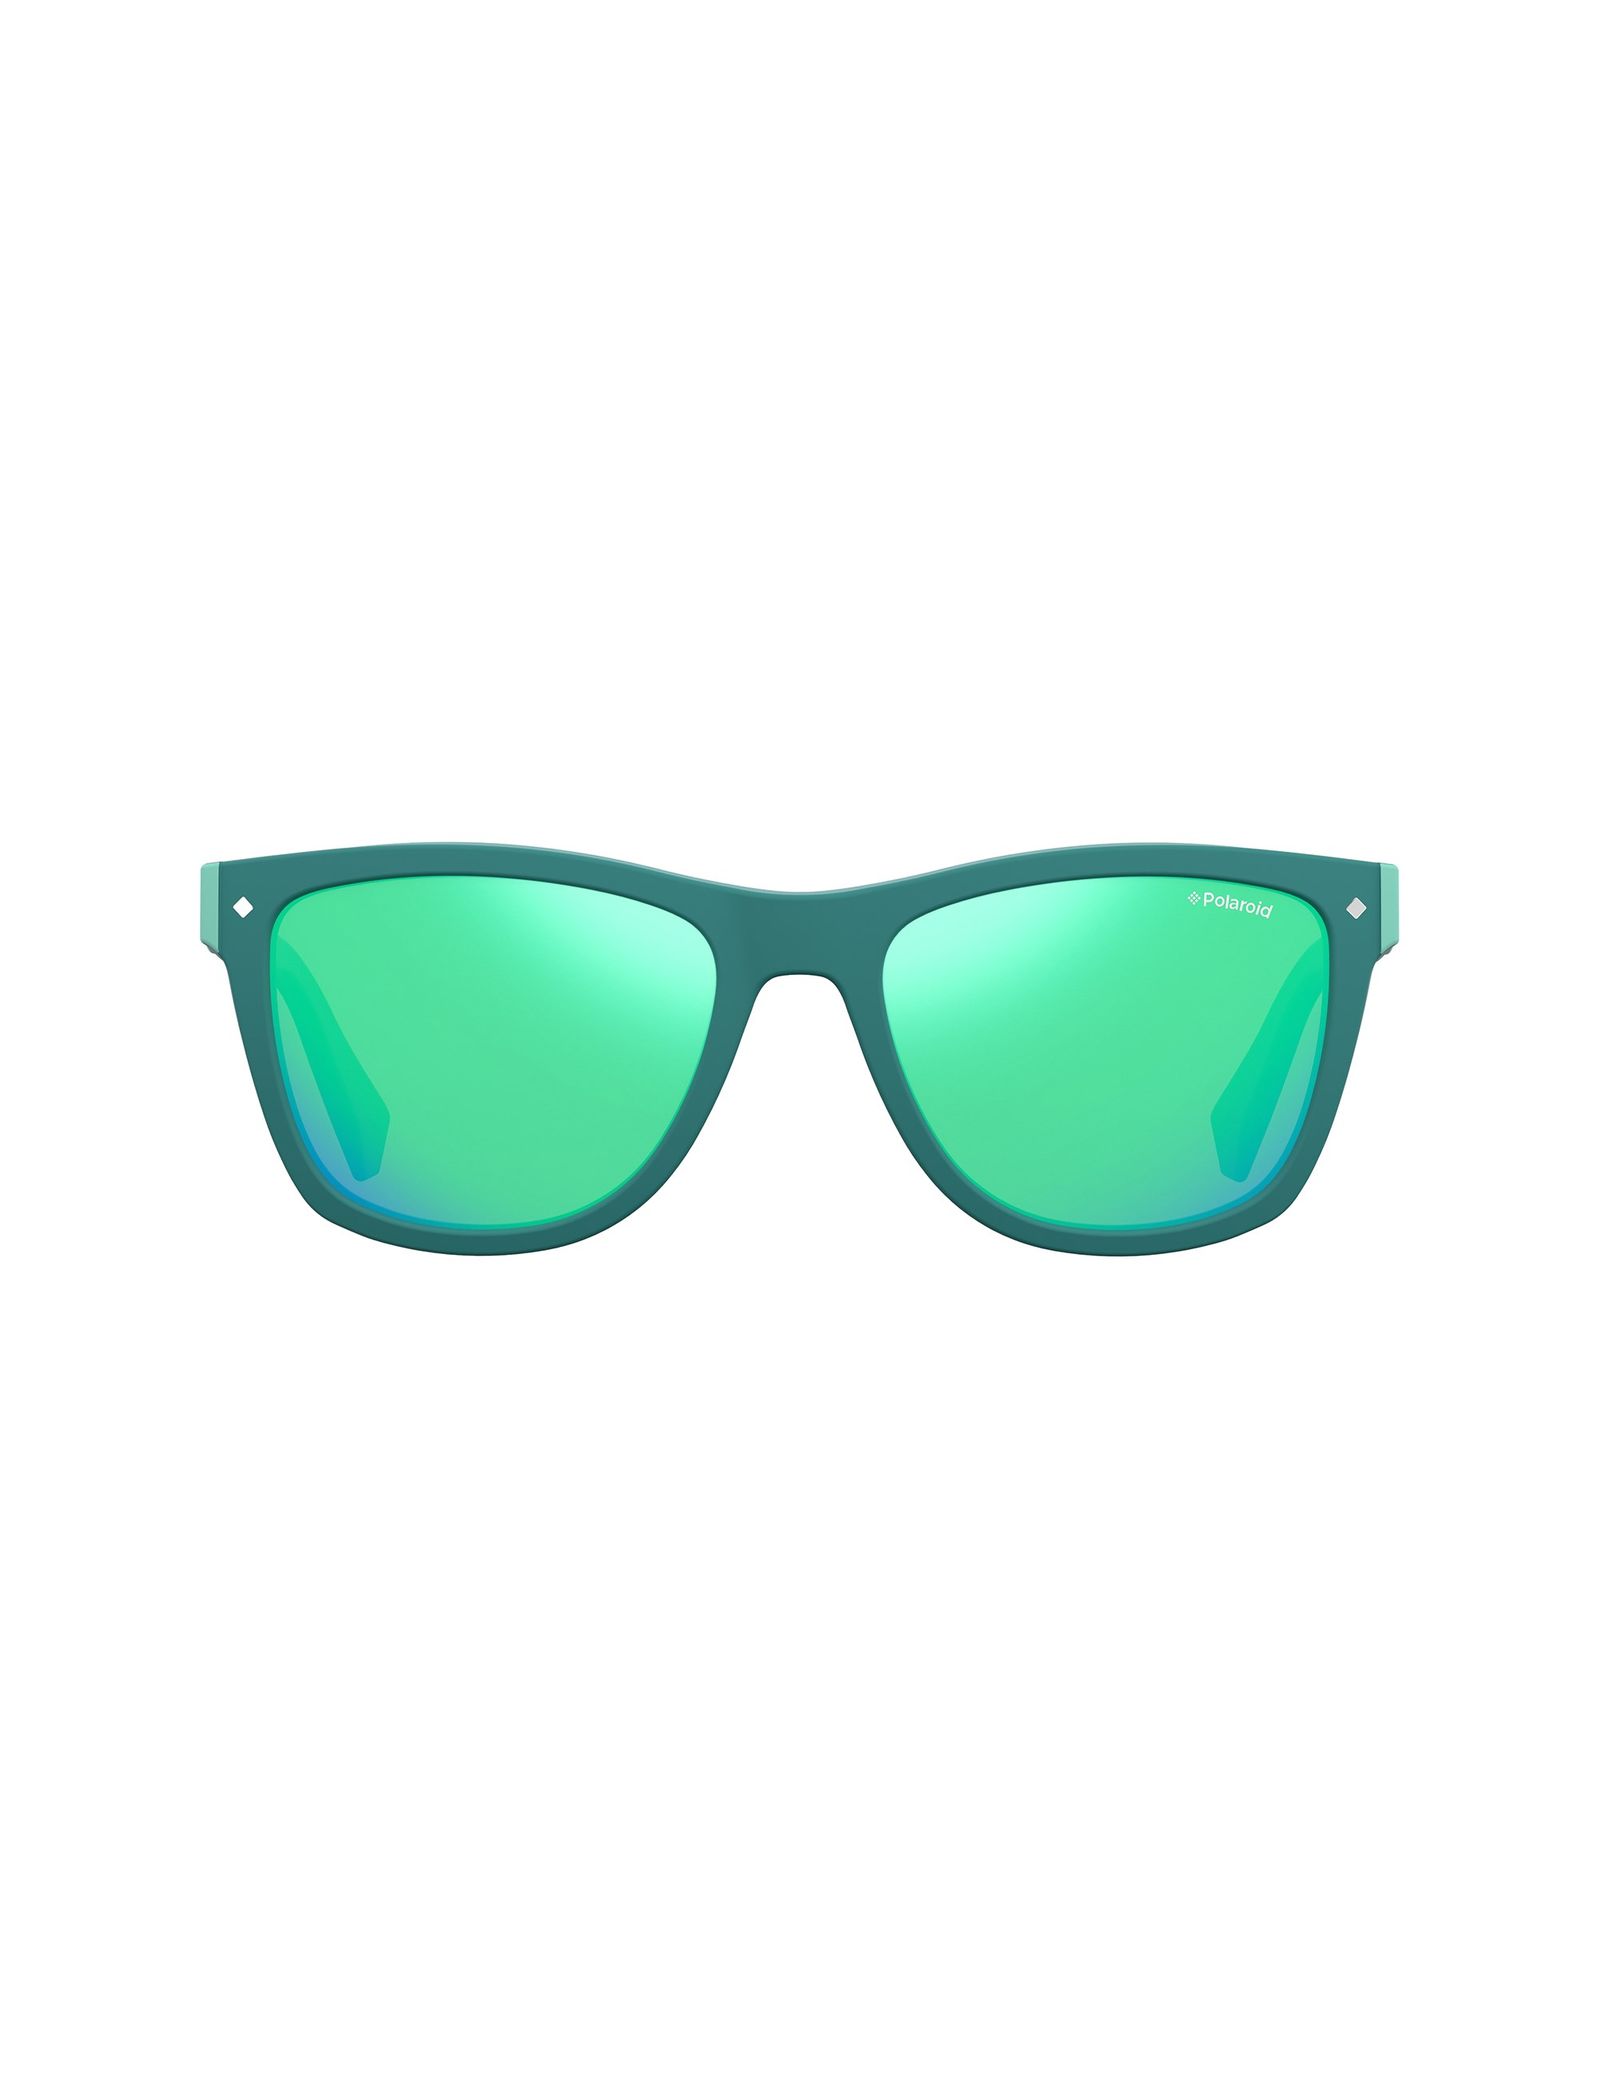 عینک آفتابی ویفرر بچگانه - پولاروید - سبز - 1